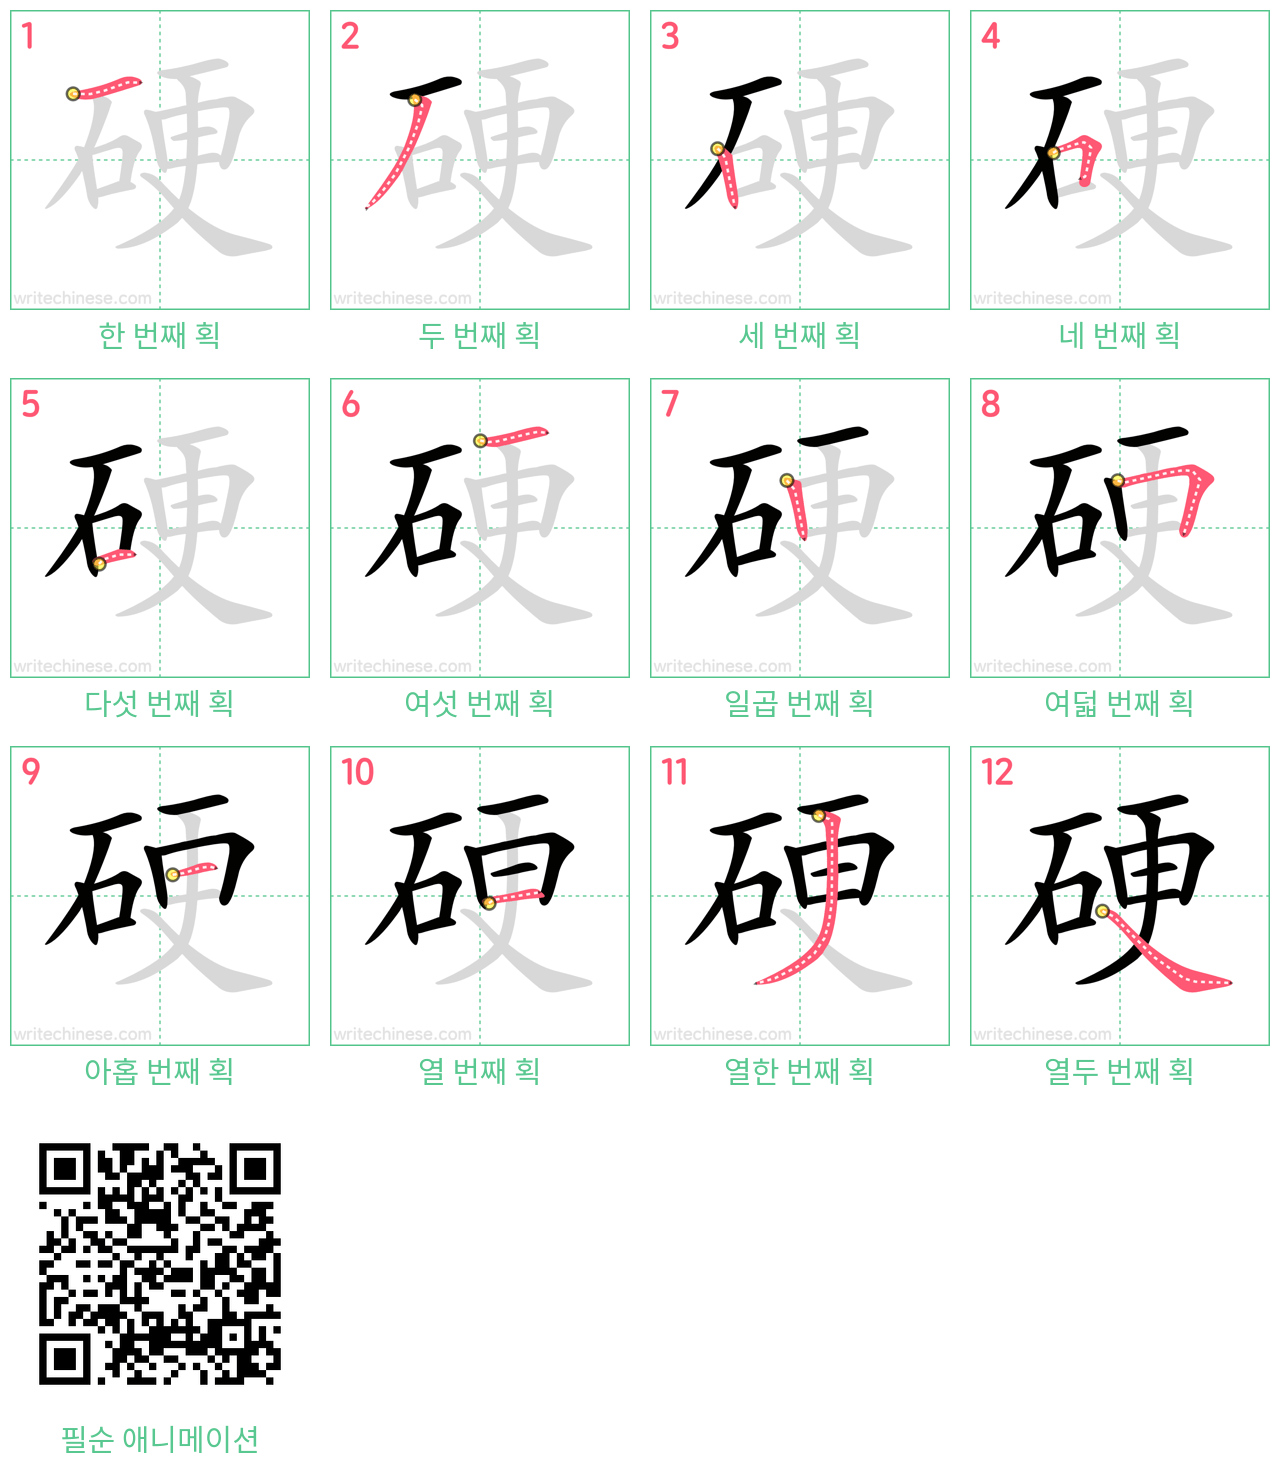 硬 step-by-step stroke order diagrams